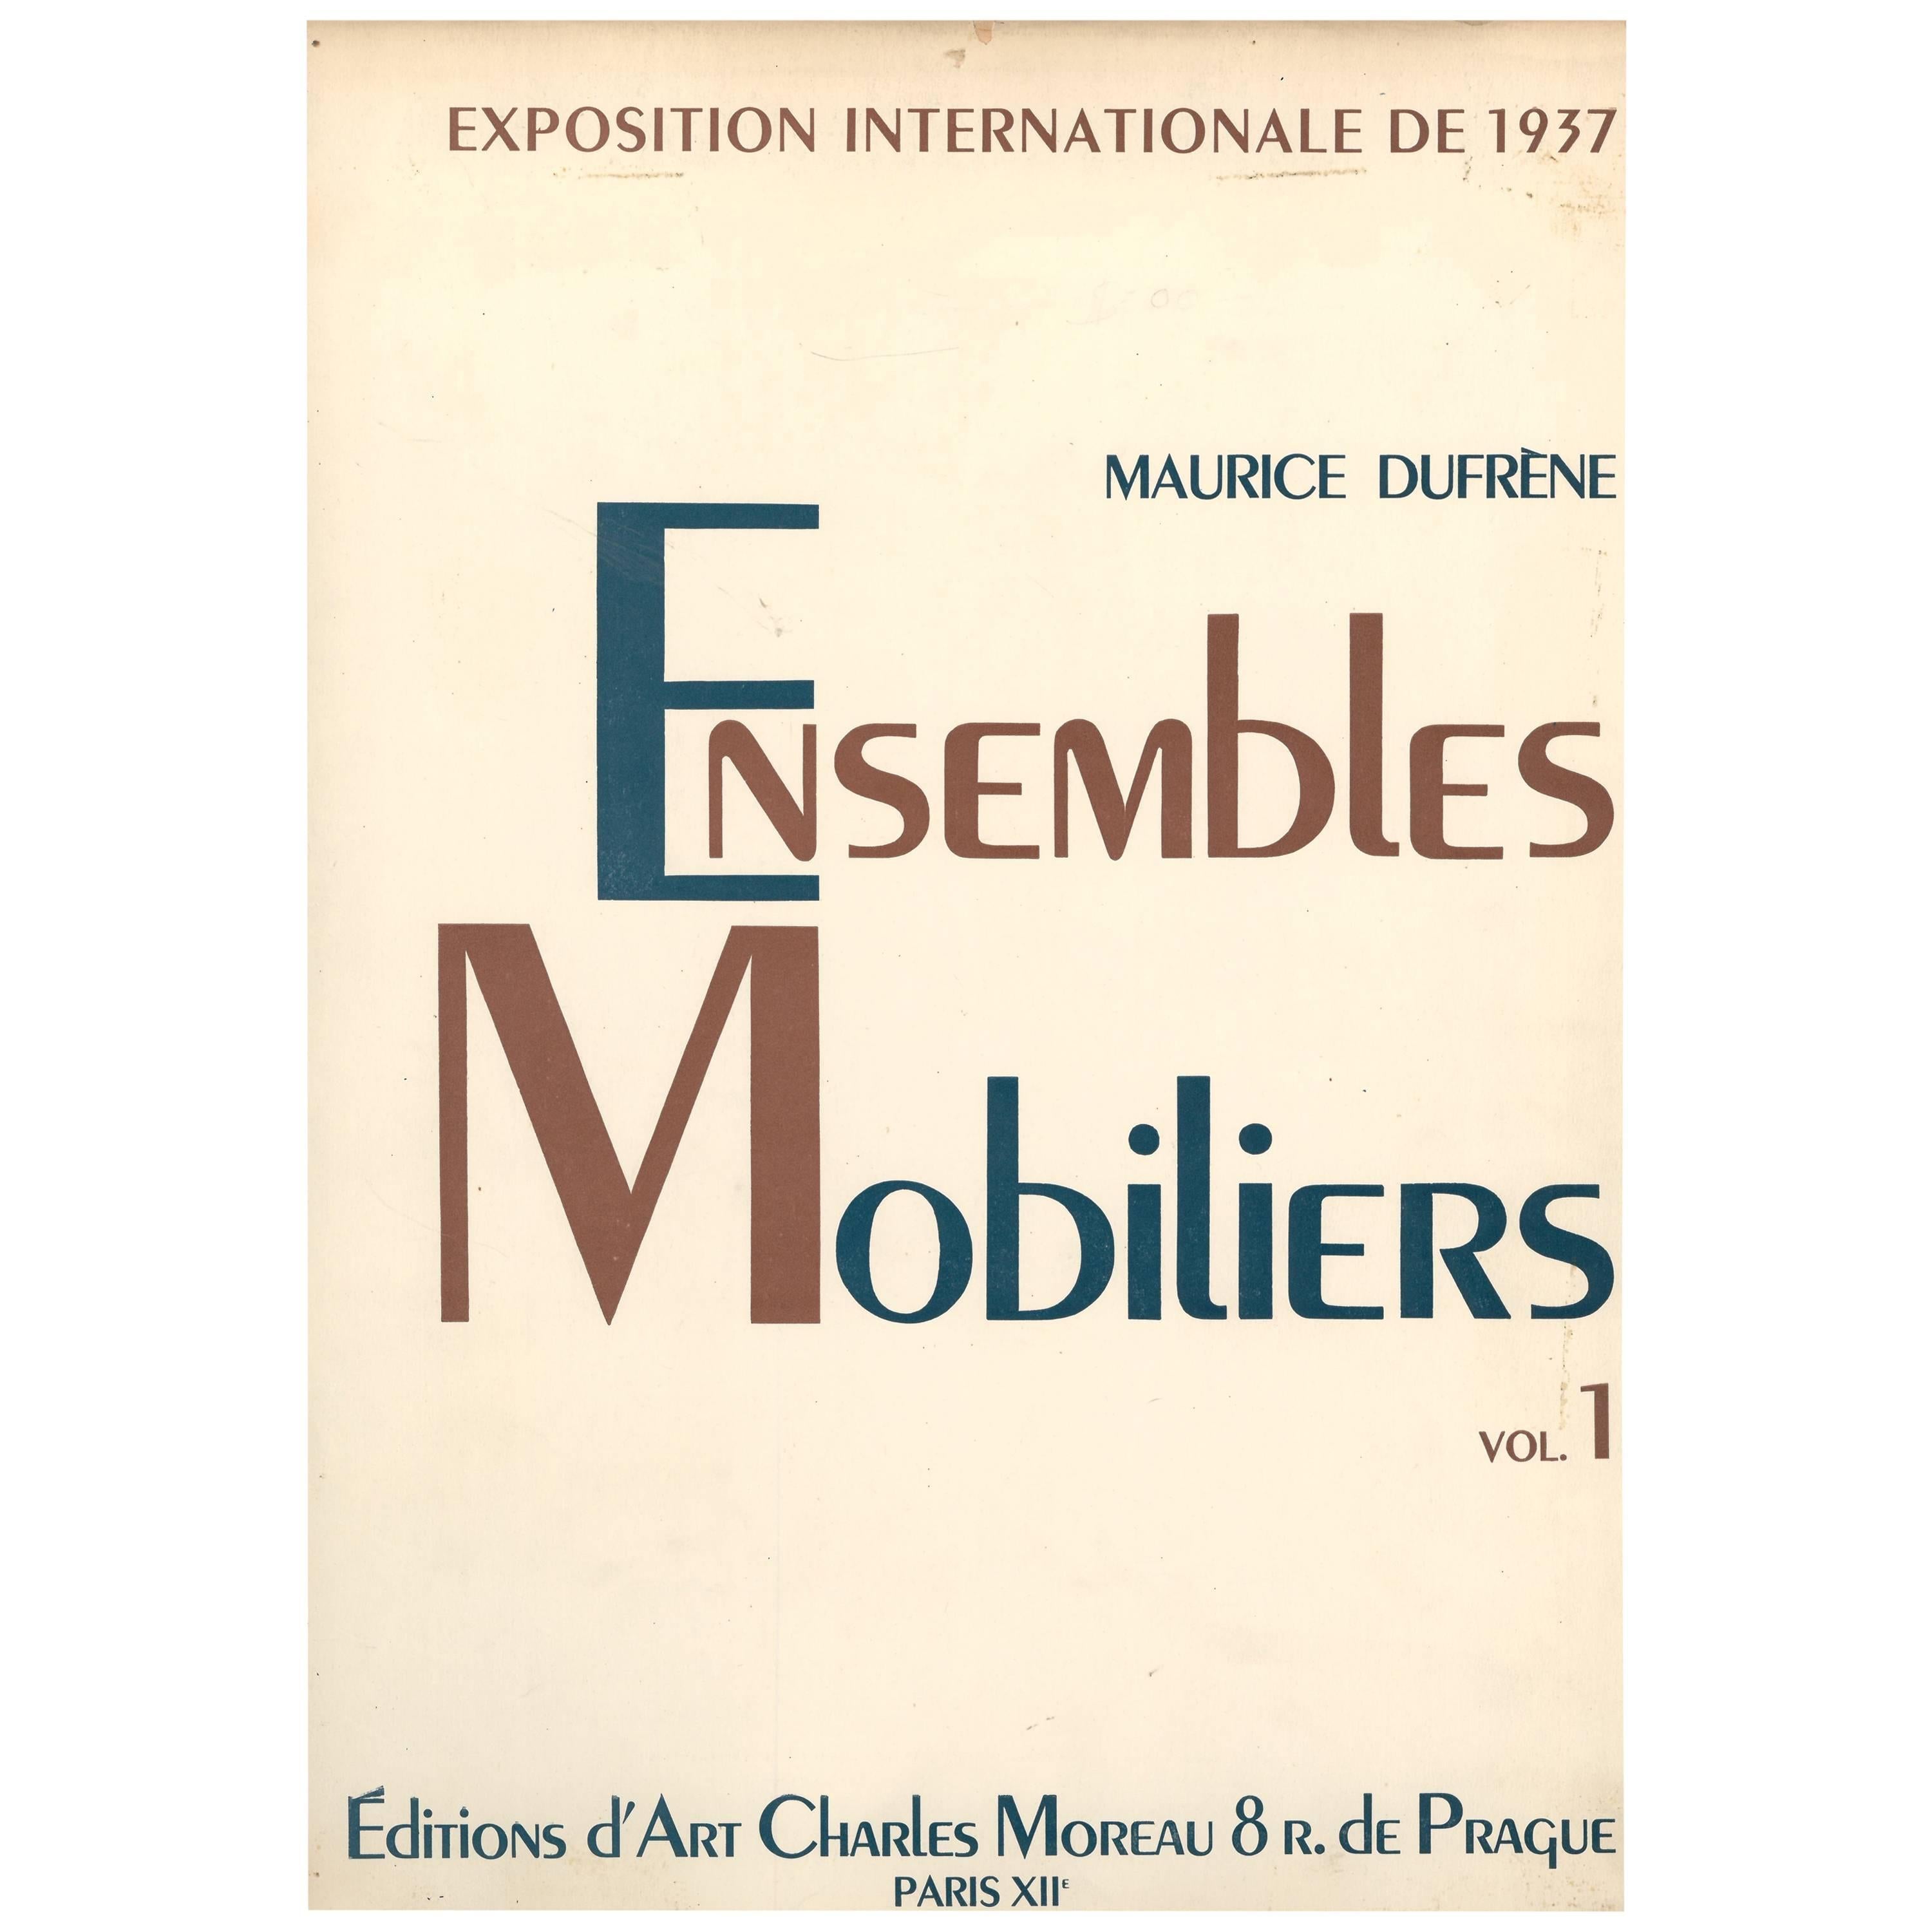 "Ensembles Mobiliers" 'Portfolio of Art Deco Room Sets' Volume 1